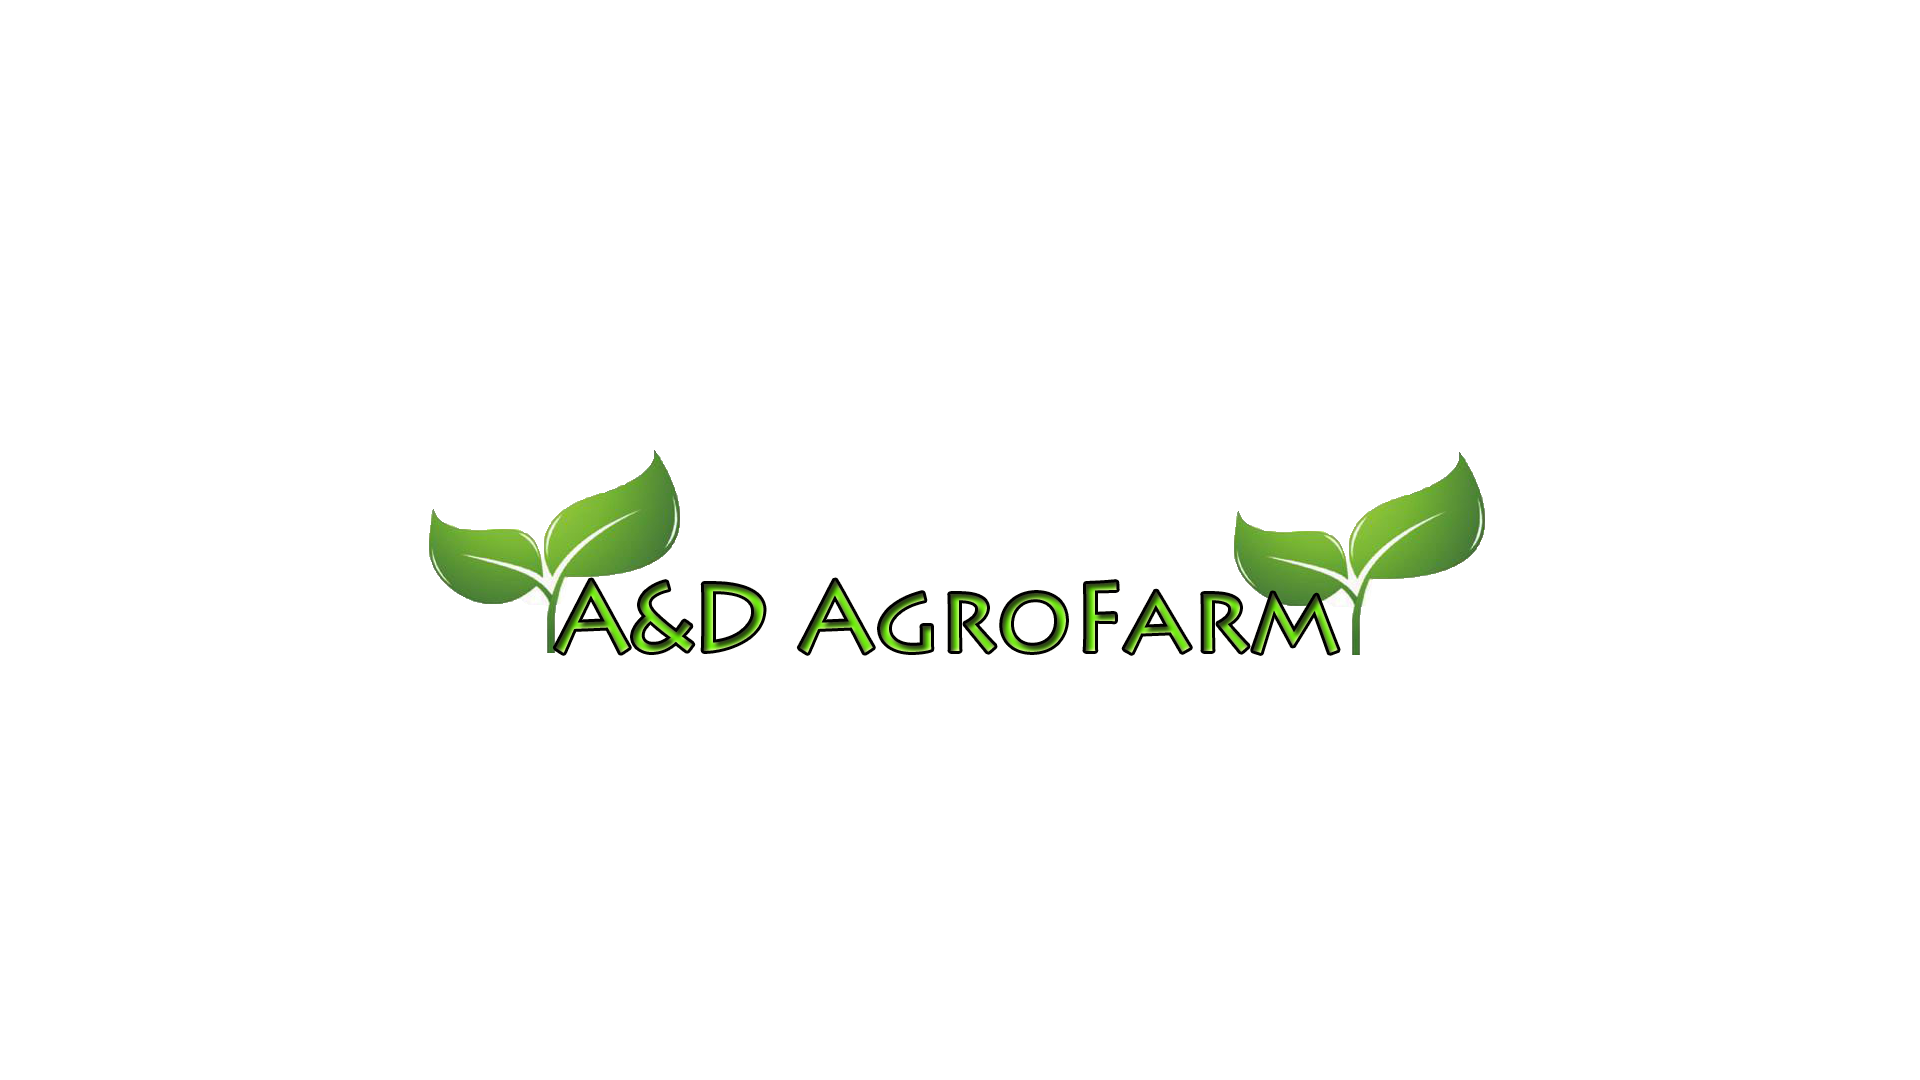 A&D AgroFarm